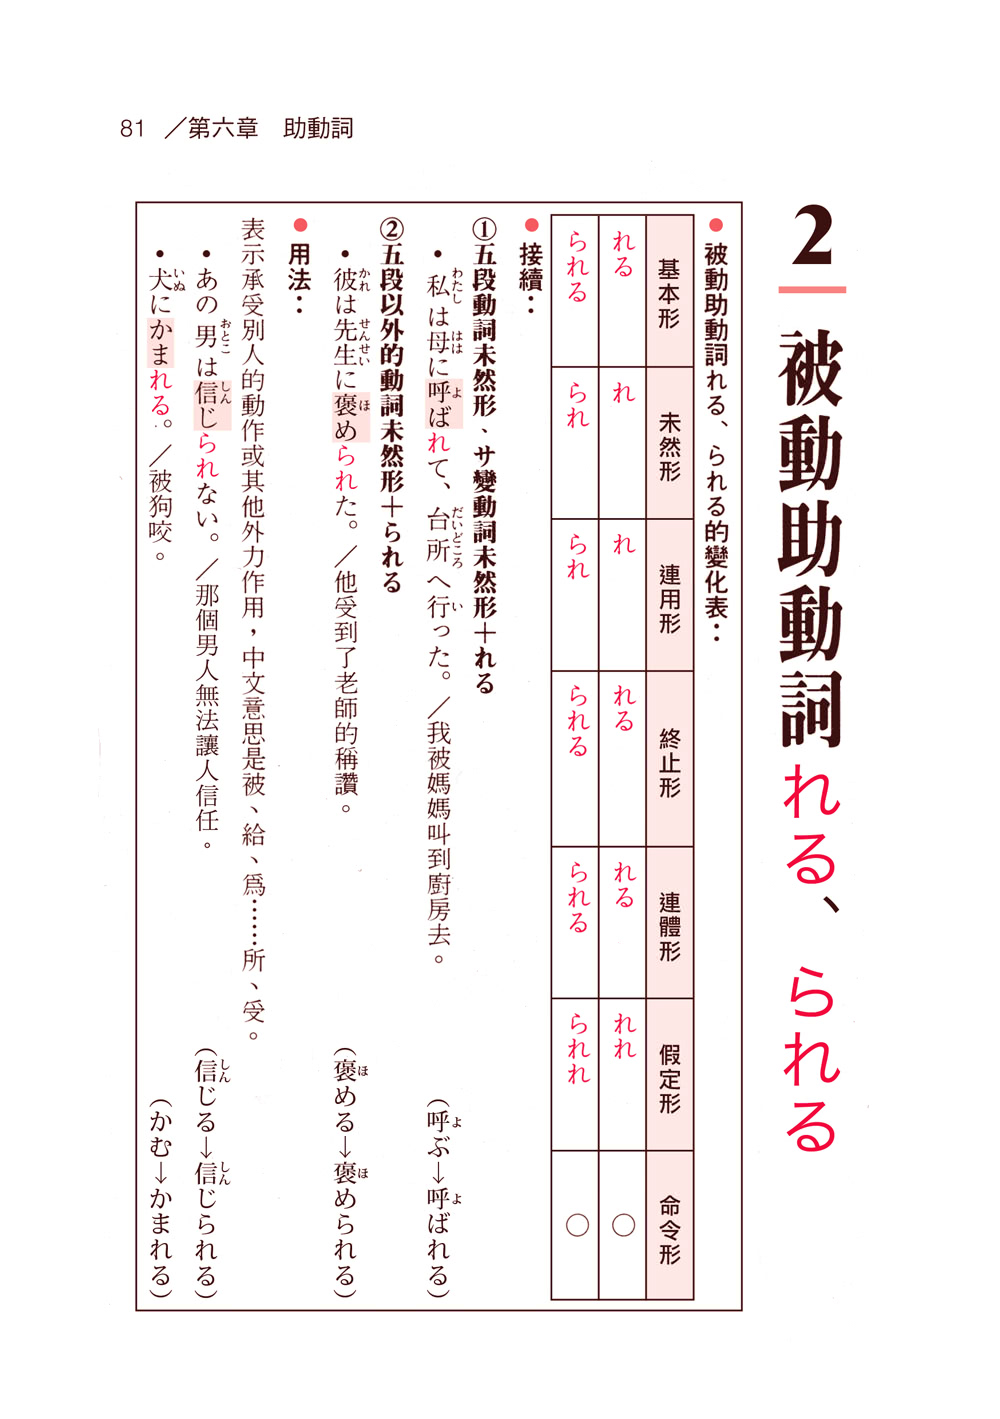 看圖表學日語文法 攜帶版 Momo購物網